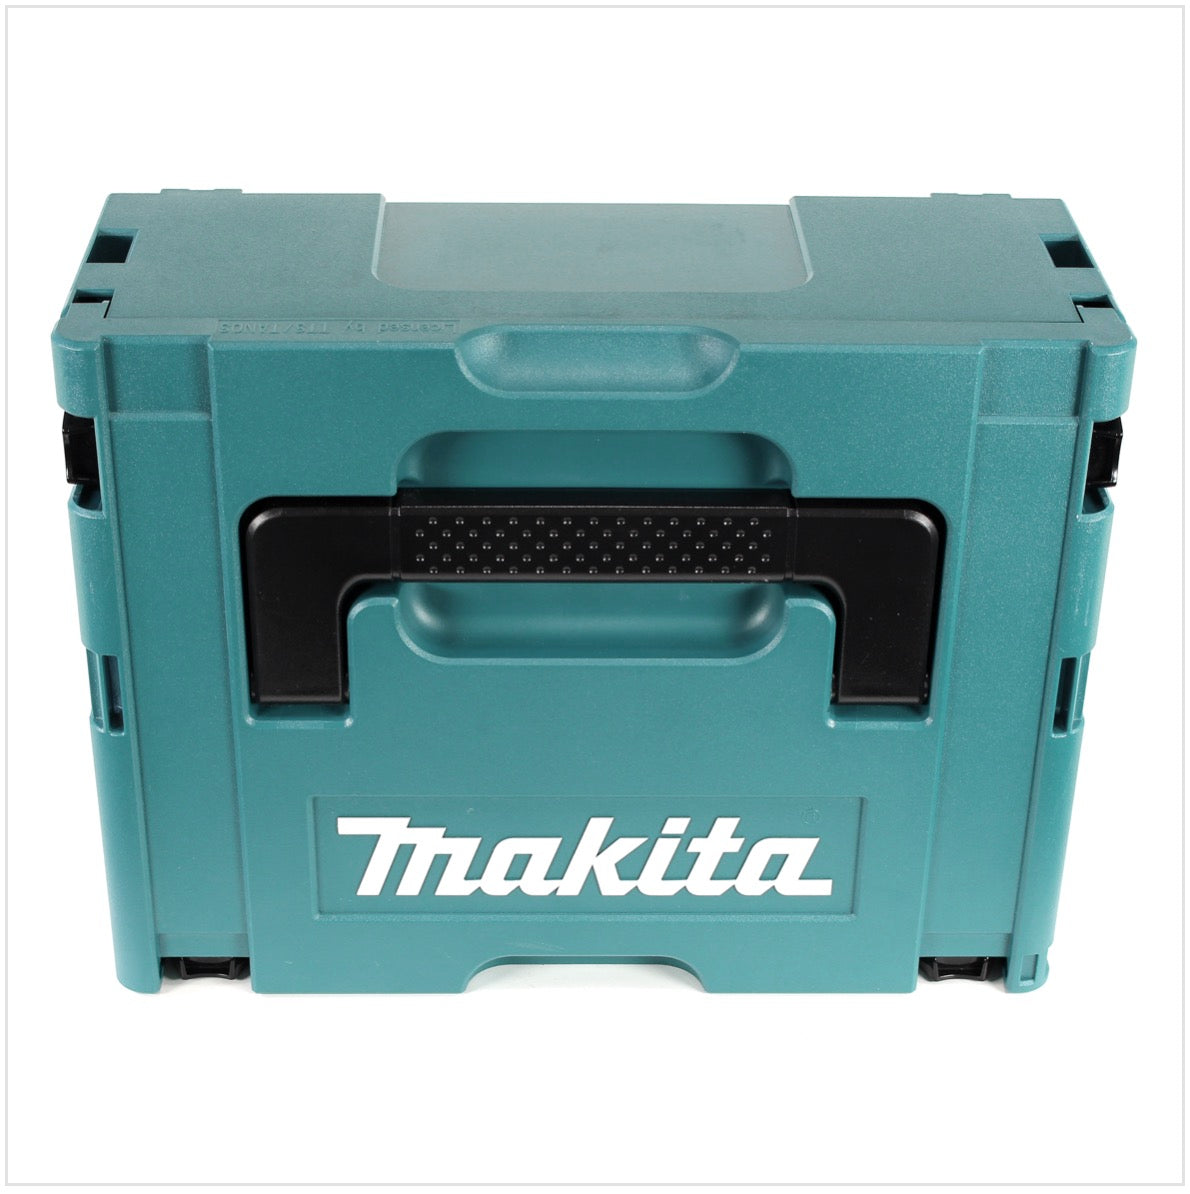 Makita MAKPAC 2 Systemkoffer - mit Universaleinlage für Makita 18 V Akku Geräte Schrauber Sägen Schleifer